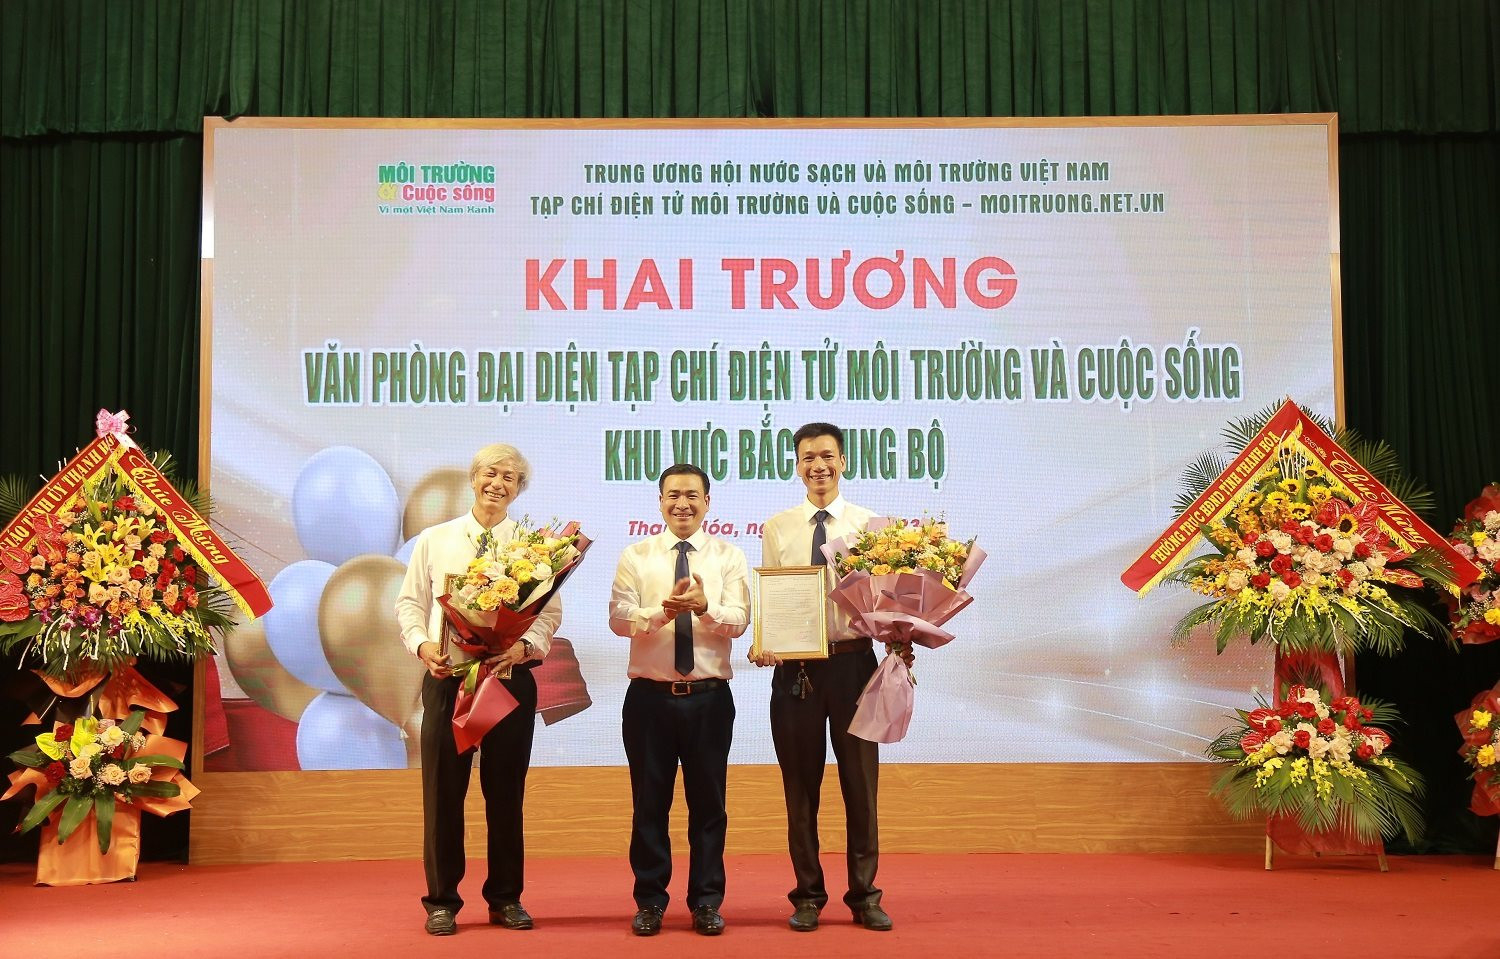 Ông Nguyễn Văn Toàn - Tổng biên tập Tạp chí điện tử Môi trường và Cuộc sống trao quyết định bổ nhiệm cho cán bộ văn phòng.